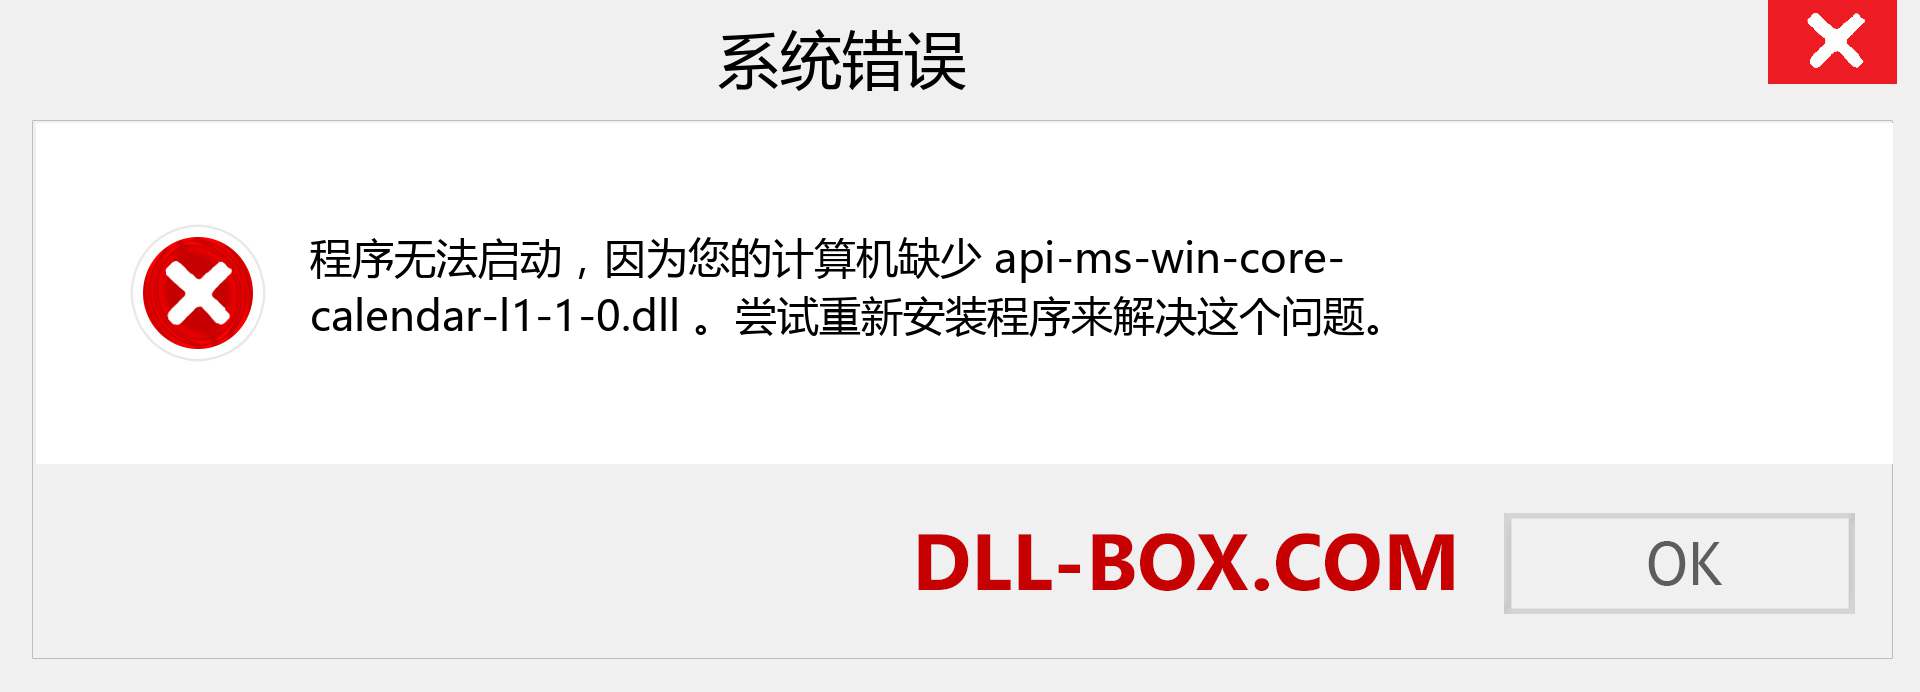 api-ms-win-core-calendar-l1-1-0.dll 文件丢失？。 适用于 Windows 7、8、10 的下载 - 修复 Windows、照片、图像上的 api-ms-win-core-calendar-l1-1-0 dll 丢失错误